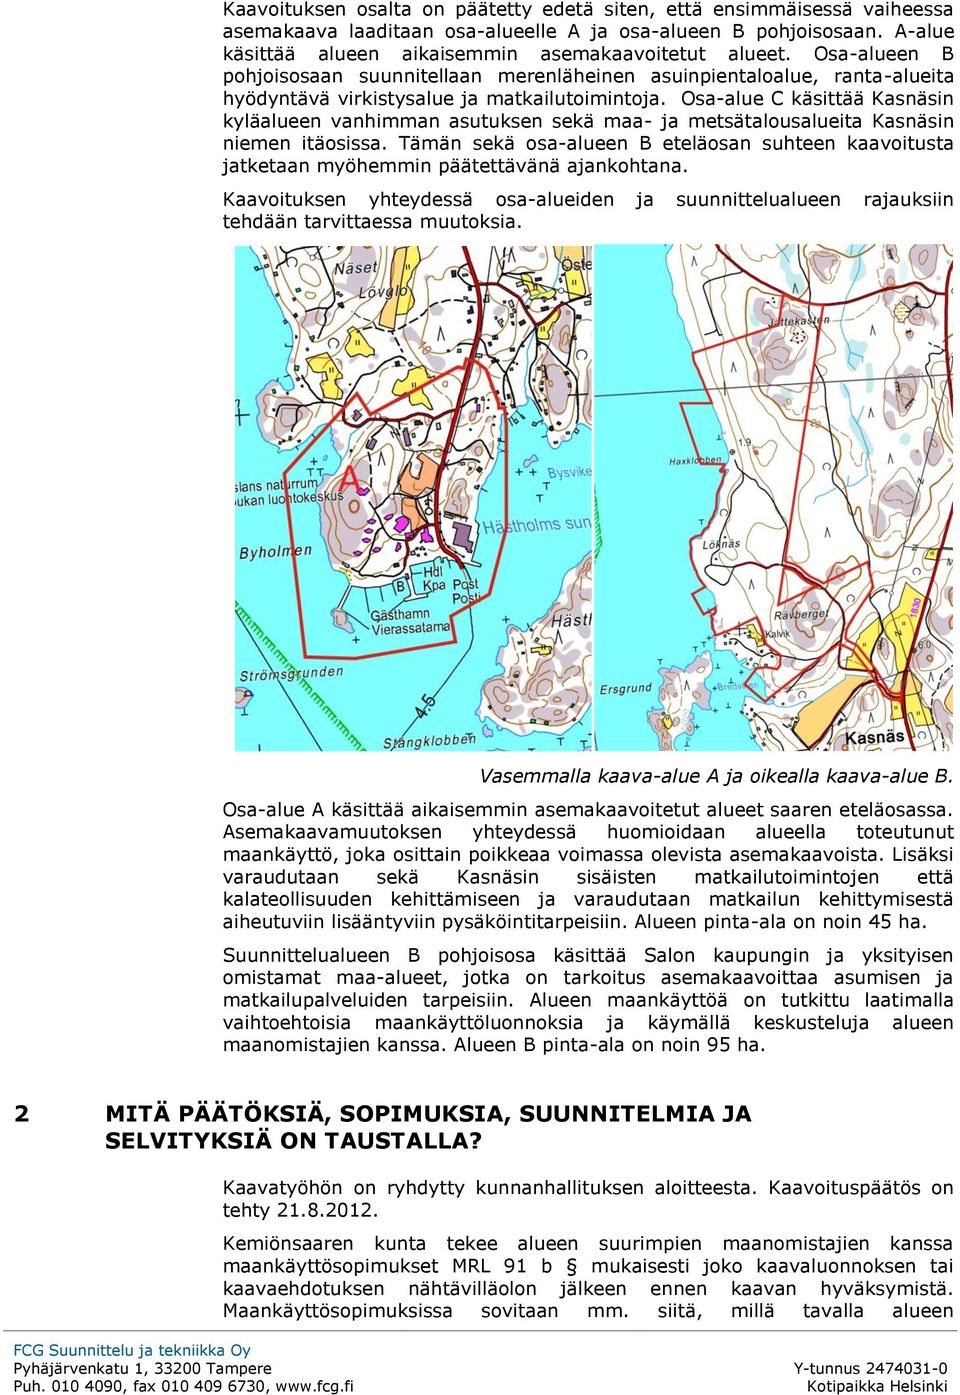 Osa-alue C käsittää Kasnäsin kyläalueen vanhimman asutuksen sekä maa- ja metsätalousalueita Kasnäsin niemen itäosissa.